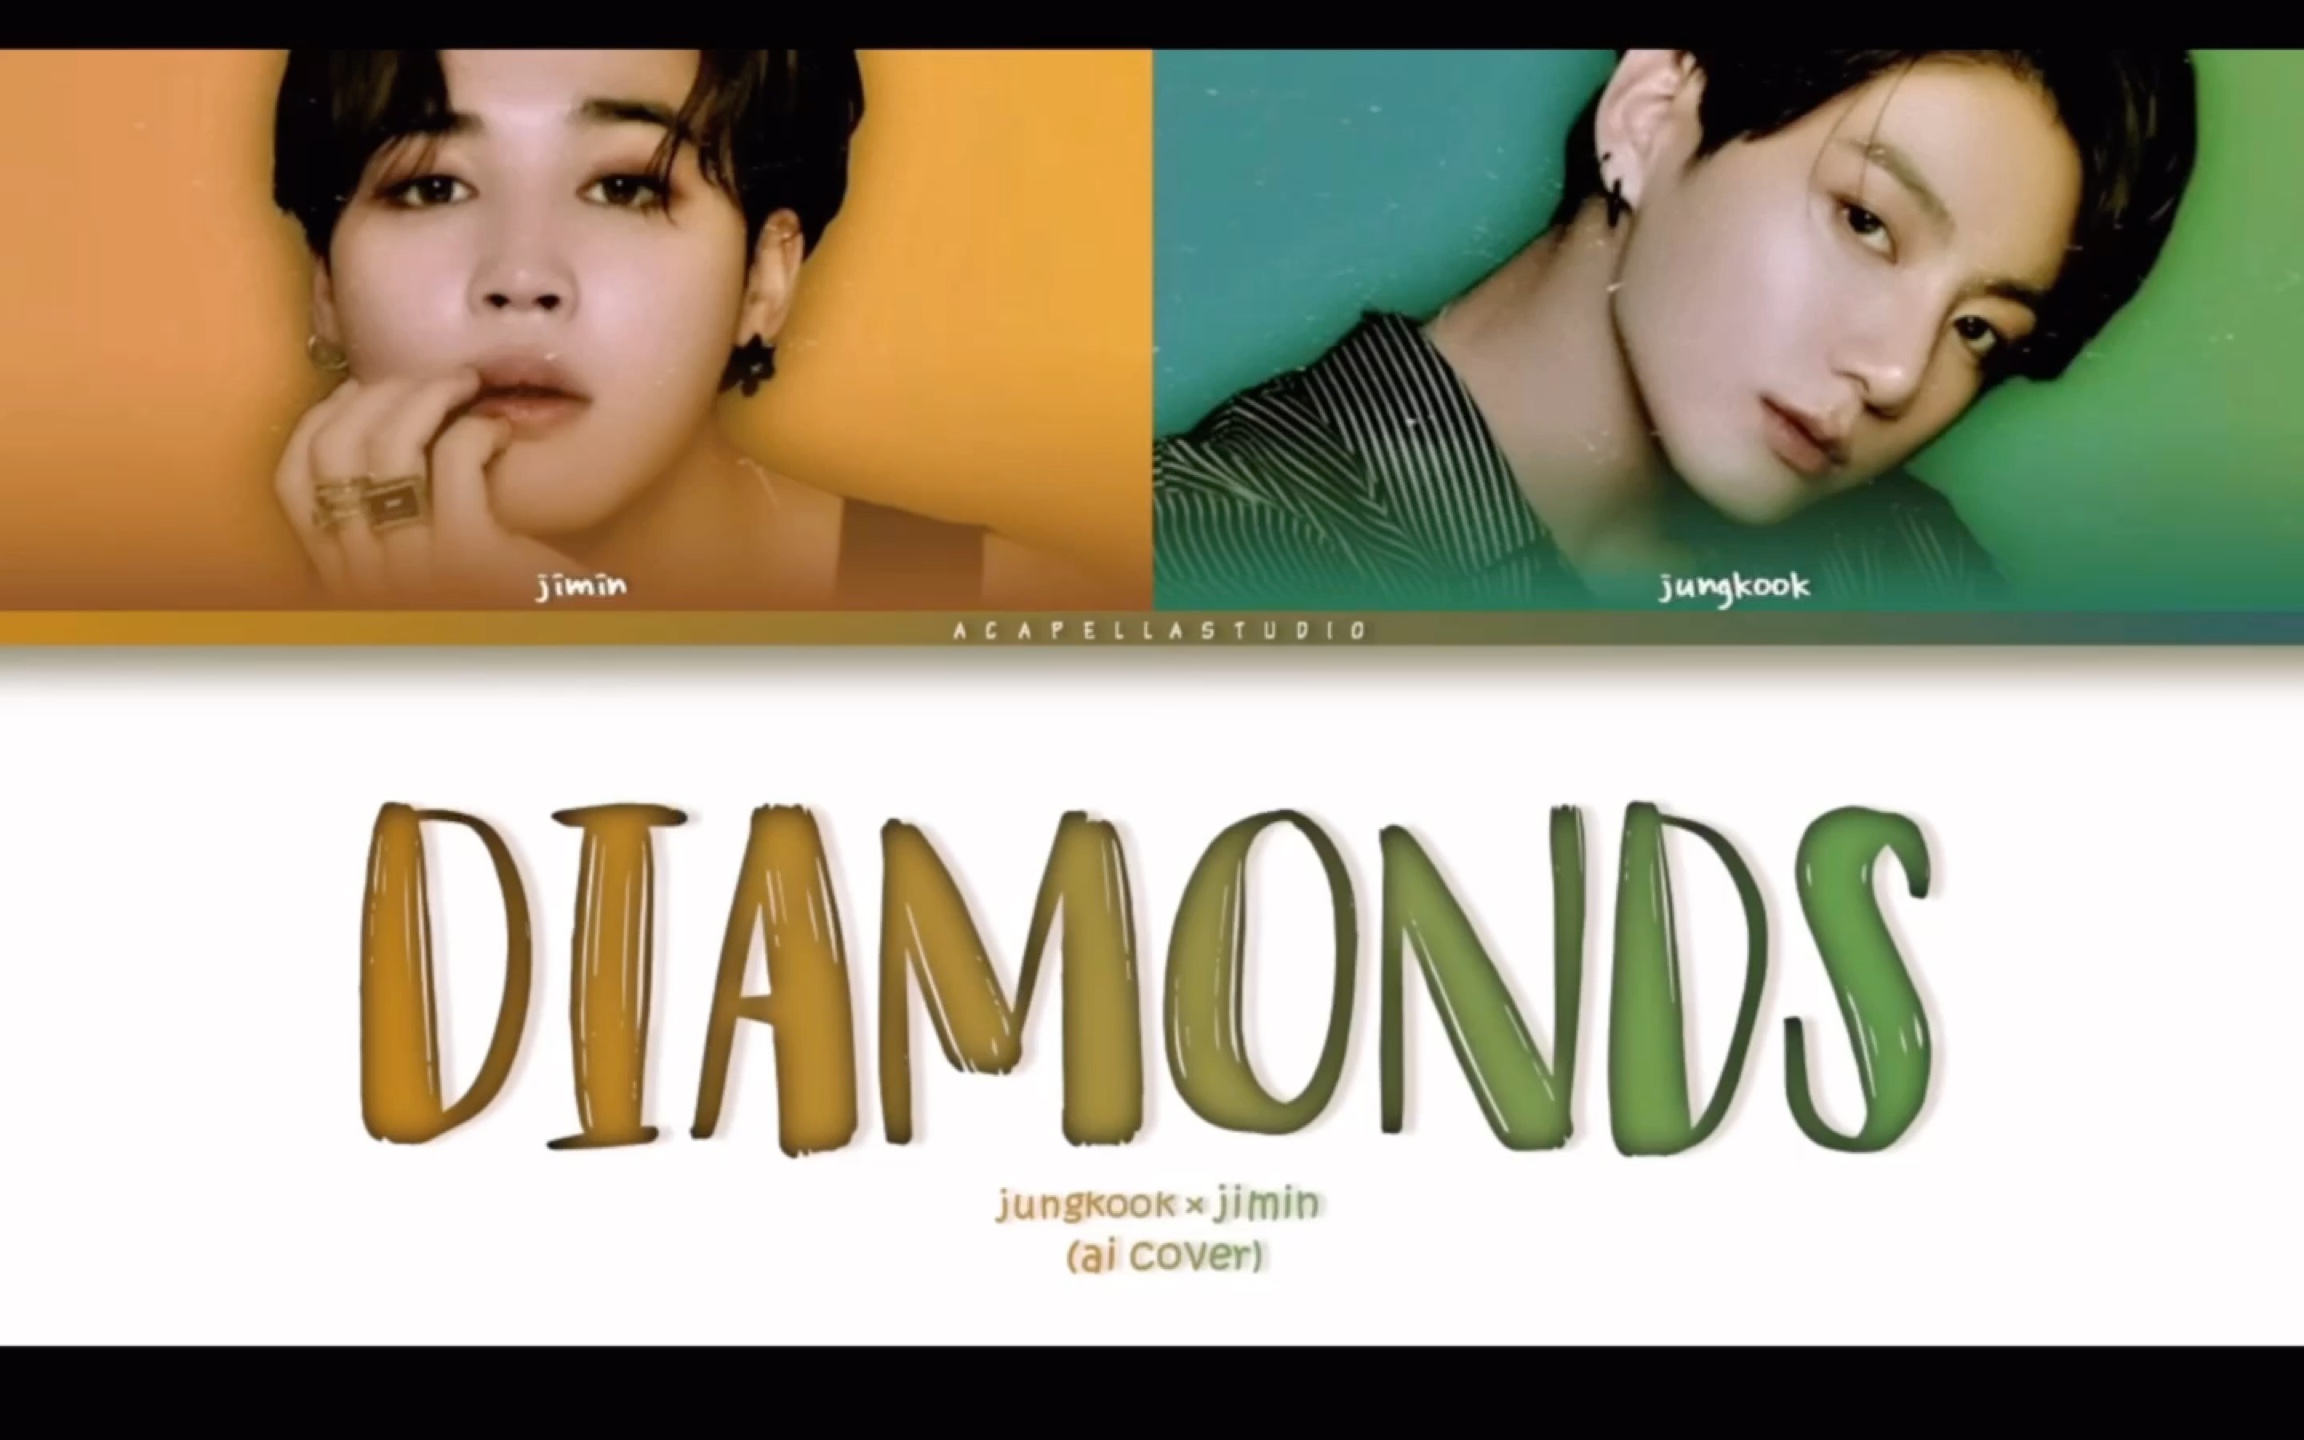 田柾国&朴智旻 - Diamonds (Ai Cover)火爆外网